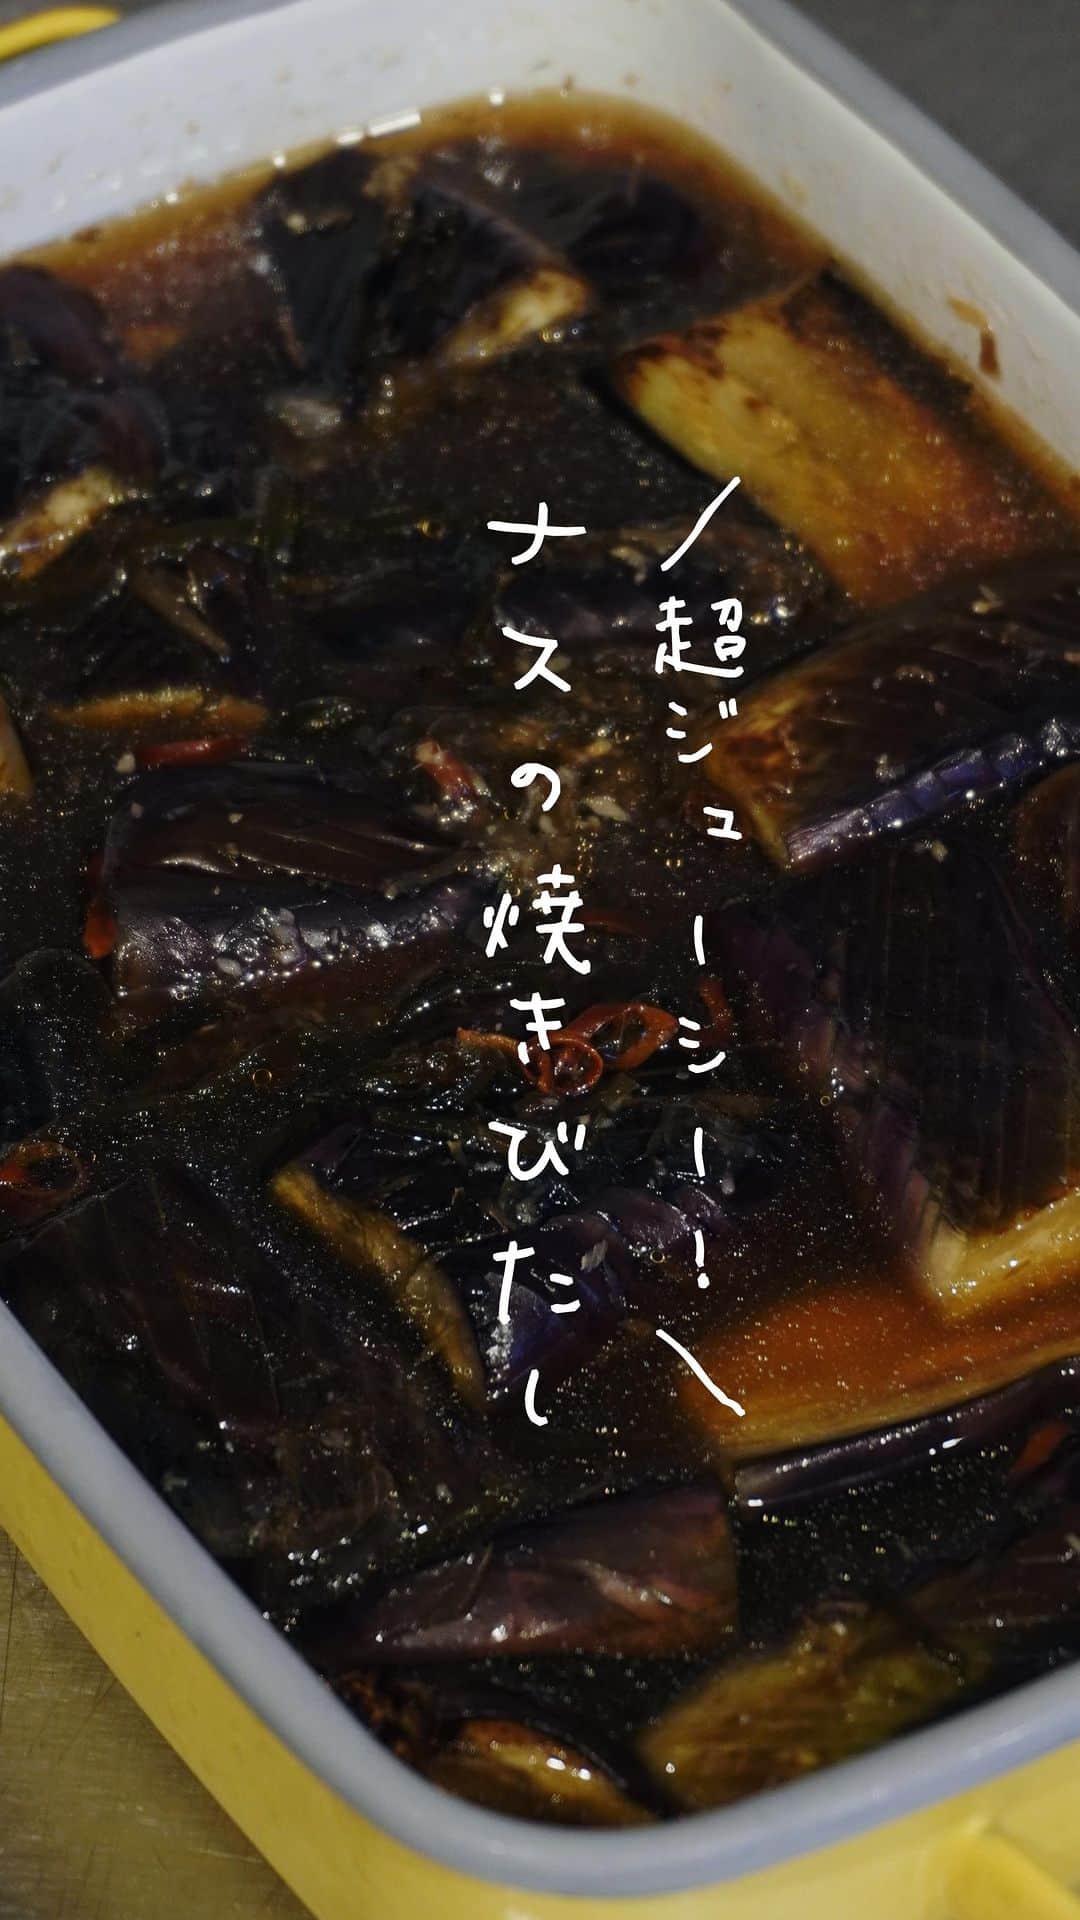 Iguchi Takuto... おうちごはんおじさんのインスタグラム：「茄子を無限に食べたくなるやばいレシピ👨‍🍳茄子の季節がくるので、ナス好きの方は是非🍆平日の仕事終わりにちゃちゃっと作りました🙆‍♂️🙆‍♀️今回は茄子3本を使ったレシピなのですが、秒で消えていくのでたくさん作っても大丈夫です！😎3本に対してタレは多めのレシピになってるので、茄子増やしてもこのレシピのままいけると思います！少なそうであれば、割合変えずに全体的に足して下さい👨‍🍳  ▼右下の[…]から保存を忘れずに ᝰ✍︎꙳⋆ ✄———————————————✄ ˗ˏˋ気軽にフォローして下さいね🙋‍♂️🙋‍♀️ˎˊ˗ .｡oO(いいねやコメントも励みになります✨) 料理家のいつも飯 ⇰ 〖 @ouchigohan_ojisan 〗 ✄———————————————✄ ⁡ 【胃袋掴める!料理家のいつも飯】 僕はフルタイムの会社員でありながら、 料理研究家として様々な活動をしています🍳 ほんとに多忙な毎日なので、 会社の勤務前、休憩時間、勤務後などに作る 【簡単かつ超絶美味しいレシピ】を紹介していますよ👨‍🍳 ラフな格好が多めですが、ご容赦下さい😙🥹 ⁡ 𓌉◯𓇋——————————𓌉◯𓇋 ⁡ 今回のレシピも是非作ってみて下さいね🙋‍♂️🙋‍♀️ 後で見る方も、‎𓊆 保存ボタン☝️‎𓊇を忘れずに☺️✨ ⁡ 美味しいで日本を元気に꒰⍨꒱.+* ⁡ ━…━…━…━…━…━…━…━…━…━ ⁡ ▼.Instagram公式アカウント → @ouchigohan_ojisan 👨‍🍳 ⁡ ▼.YouTubeチャンネル 【料理家のいつも飯🍳】と検索🔍 → https://www.youtube.com/@gohandaisukimaru ⁡ ━…━…━…━…━…━…━…━…━…━ #簡単レシピ #レシピ  #おつまみ #節約レシピ #おうちごはん #料理男子  #料理好きな人と繋がりたい #料理動画 #レシピ動画 #料理家のいつも飯 #井口タクト #茄子 #焼き浸し #ナス」